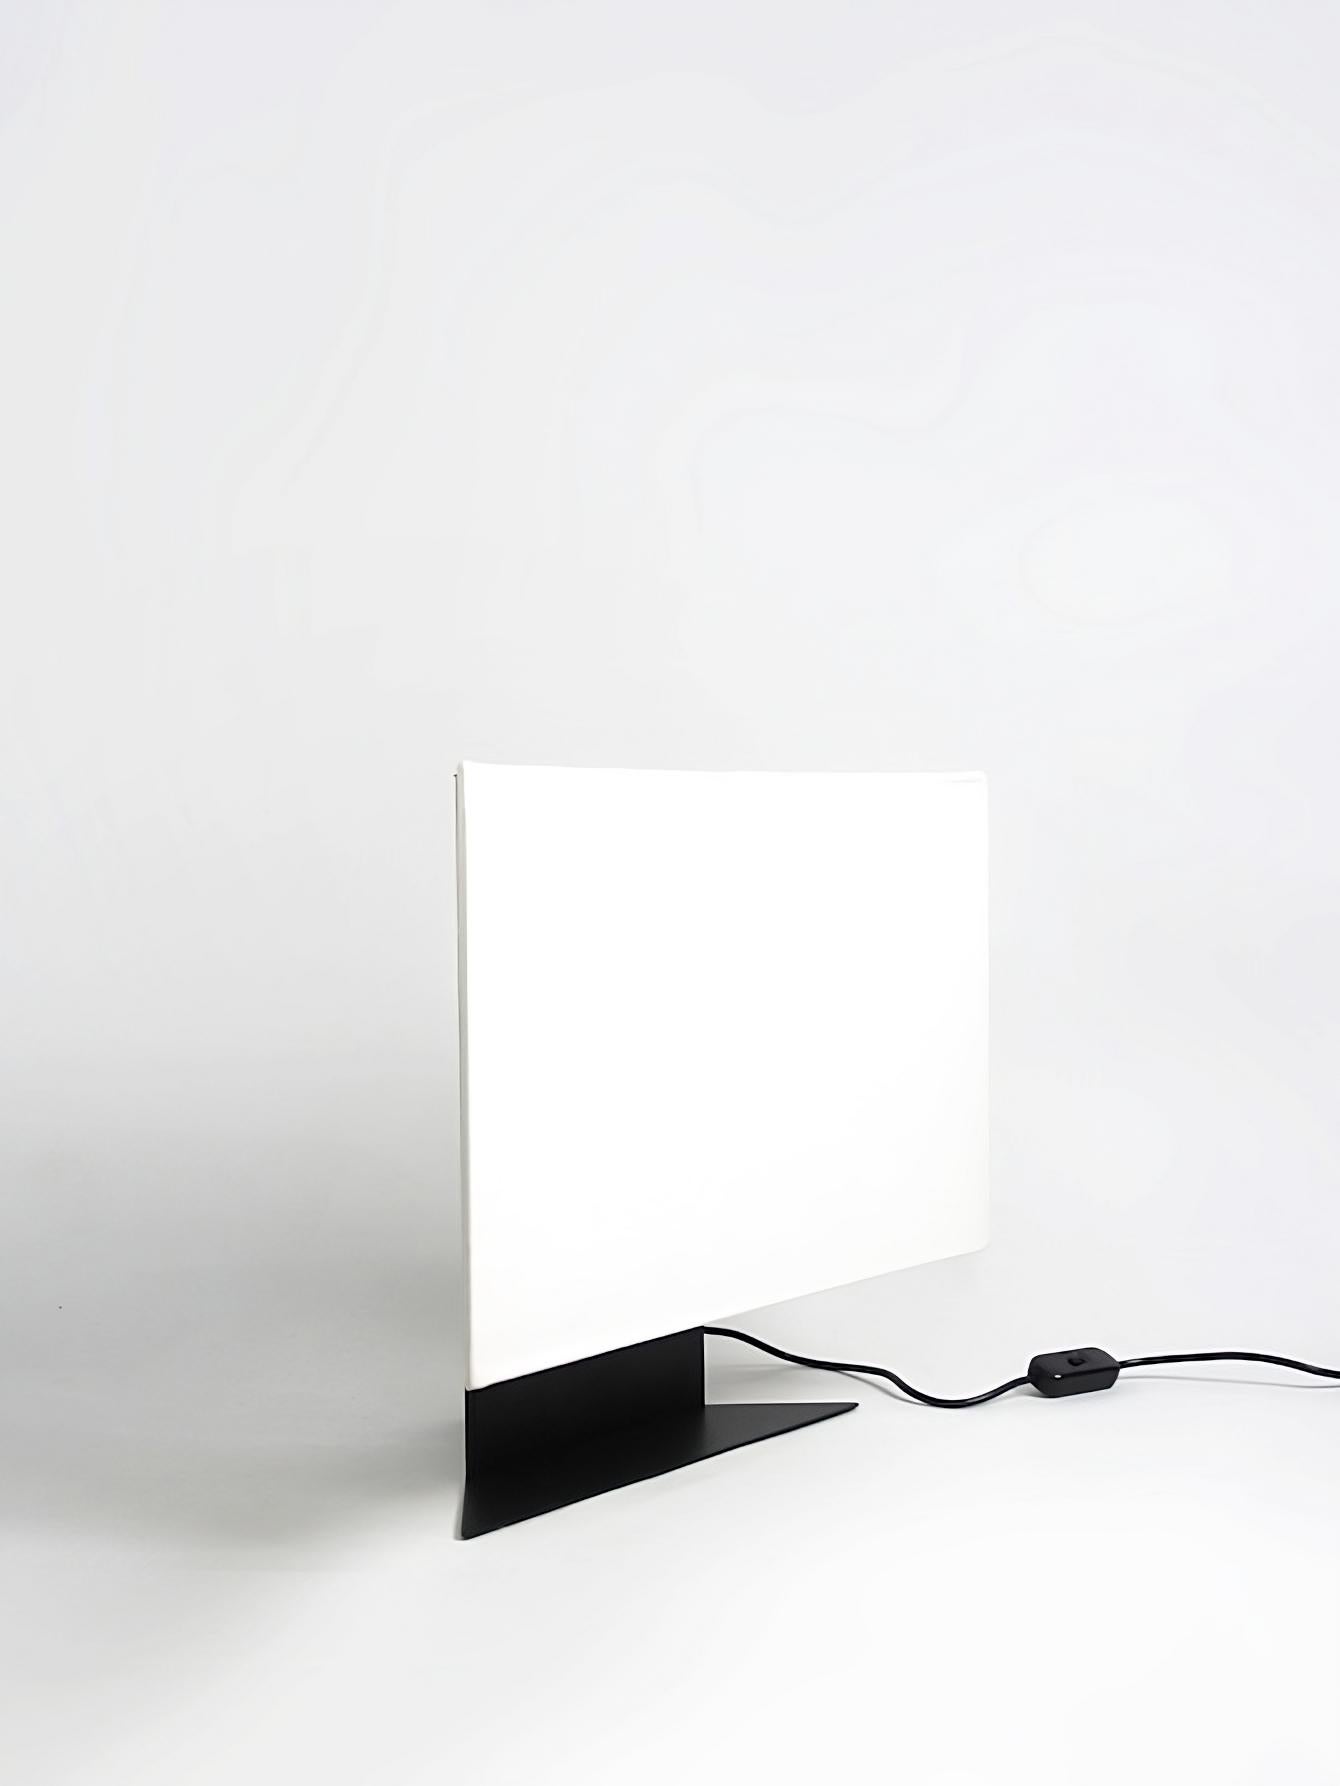 Die Leuchte Accademia, 1978 von Cini Boeri entworfen, ist eine kleine Version der beliebten Tischleuchte, die für Artemide entworfen wurde. Diese Leuchte ist ein eindrucksvolles Beispiel für den minimalistischen Designansatz von Boeri, dessen